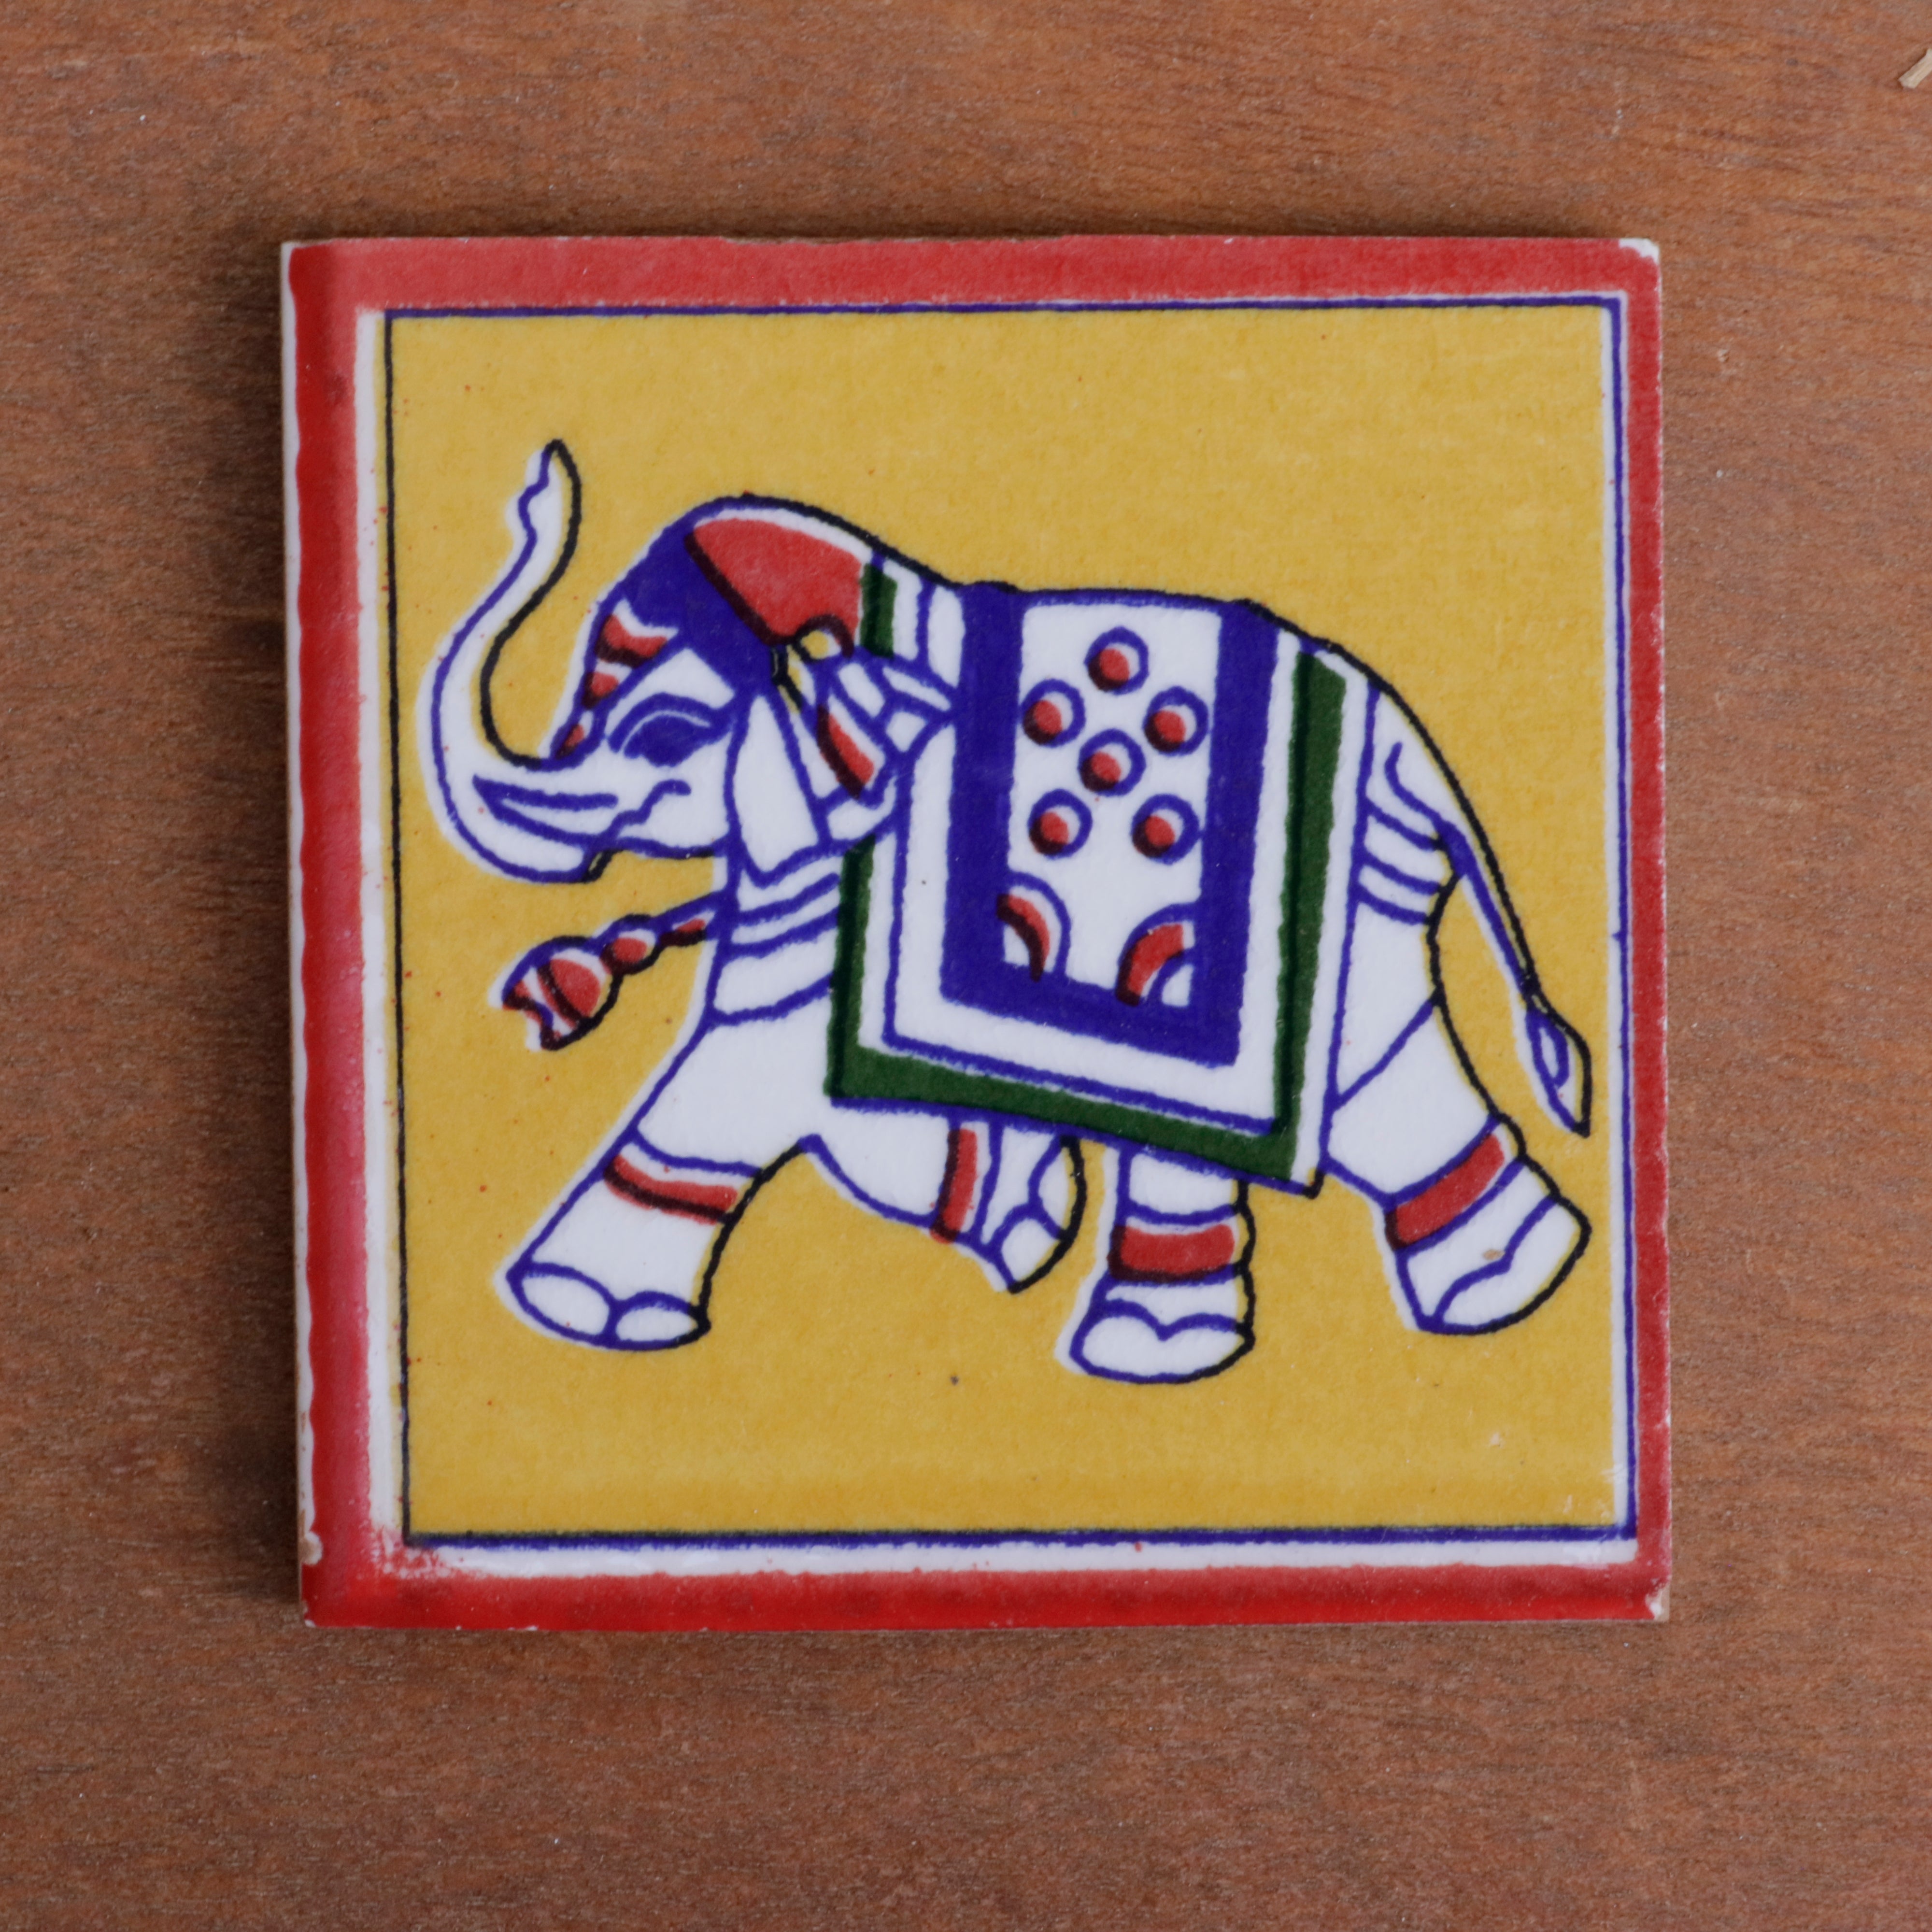 Elegant Royal Finished Elephant Designed Ceramic Square Tile set of 2 Ceramic Tile